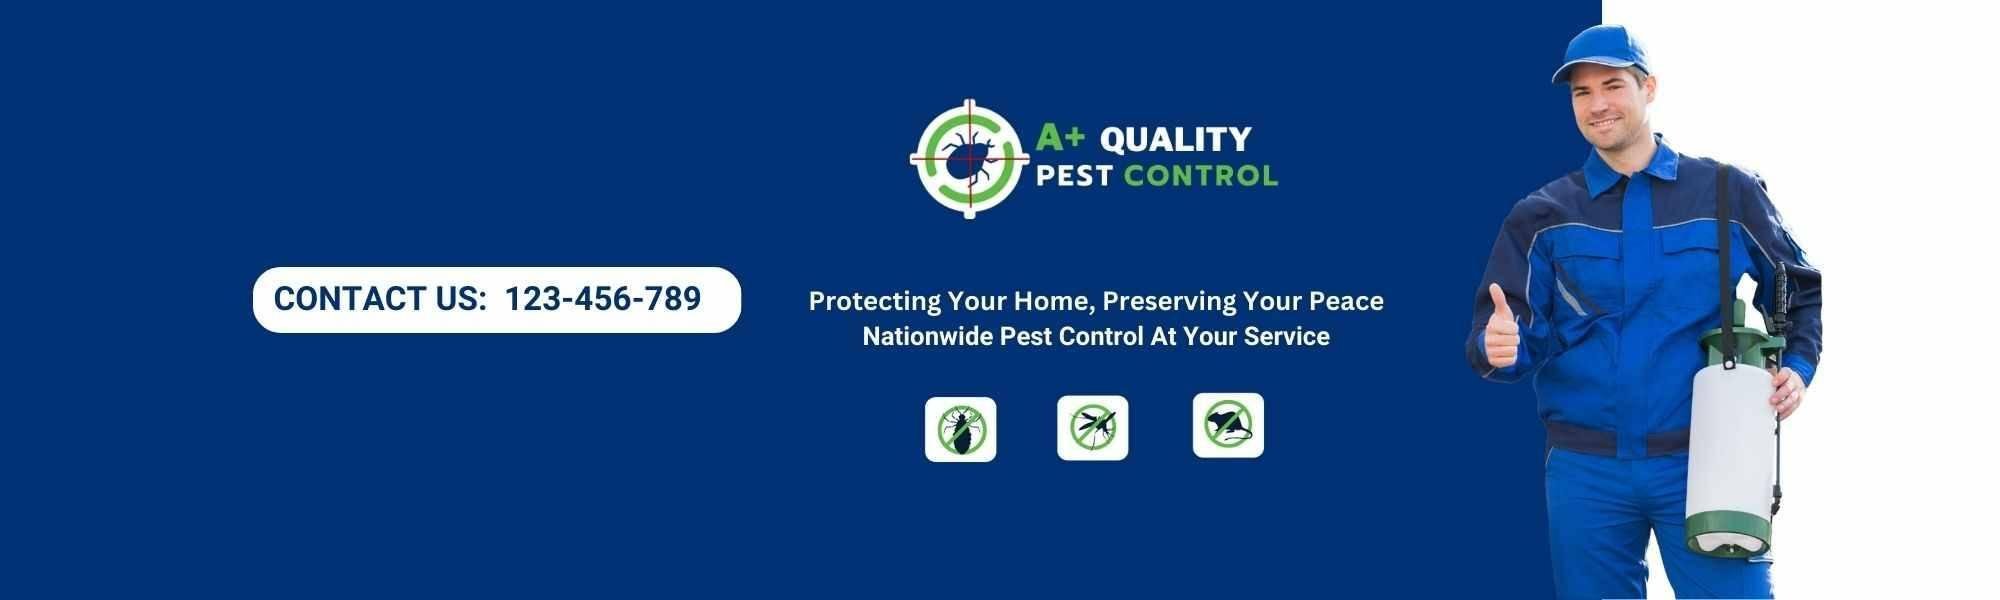 A Plus Quality Pest Control Fredericksburg VA cover